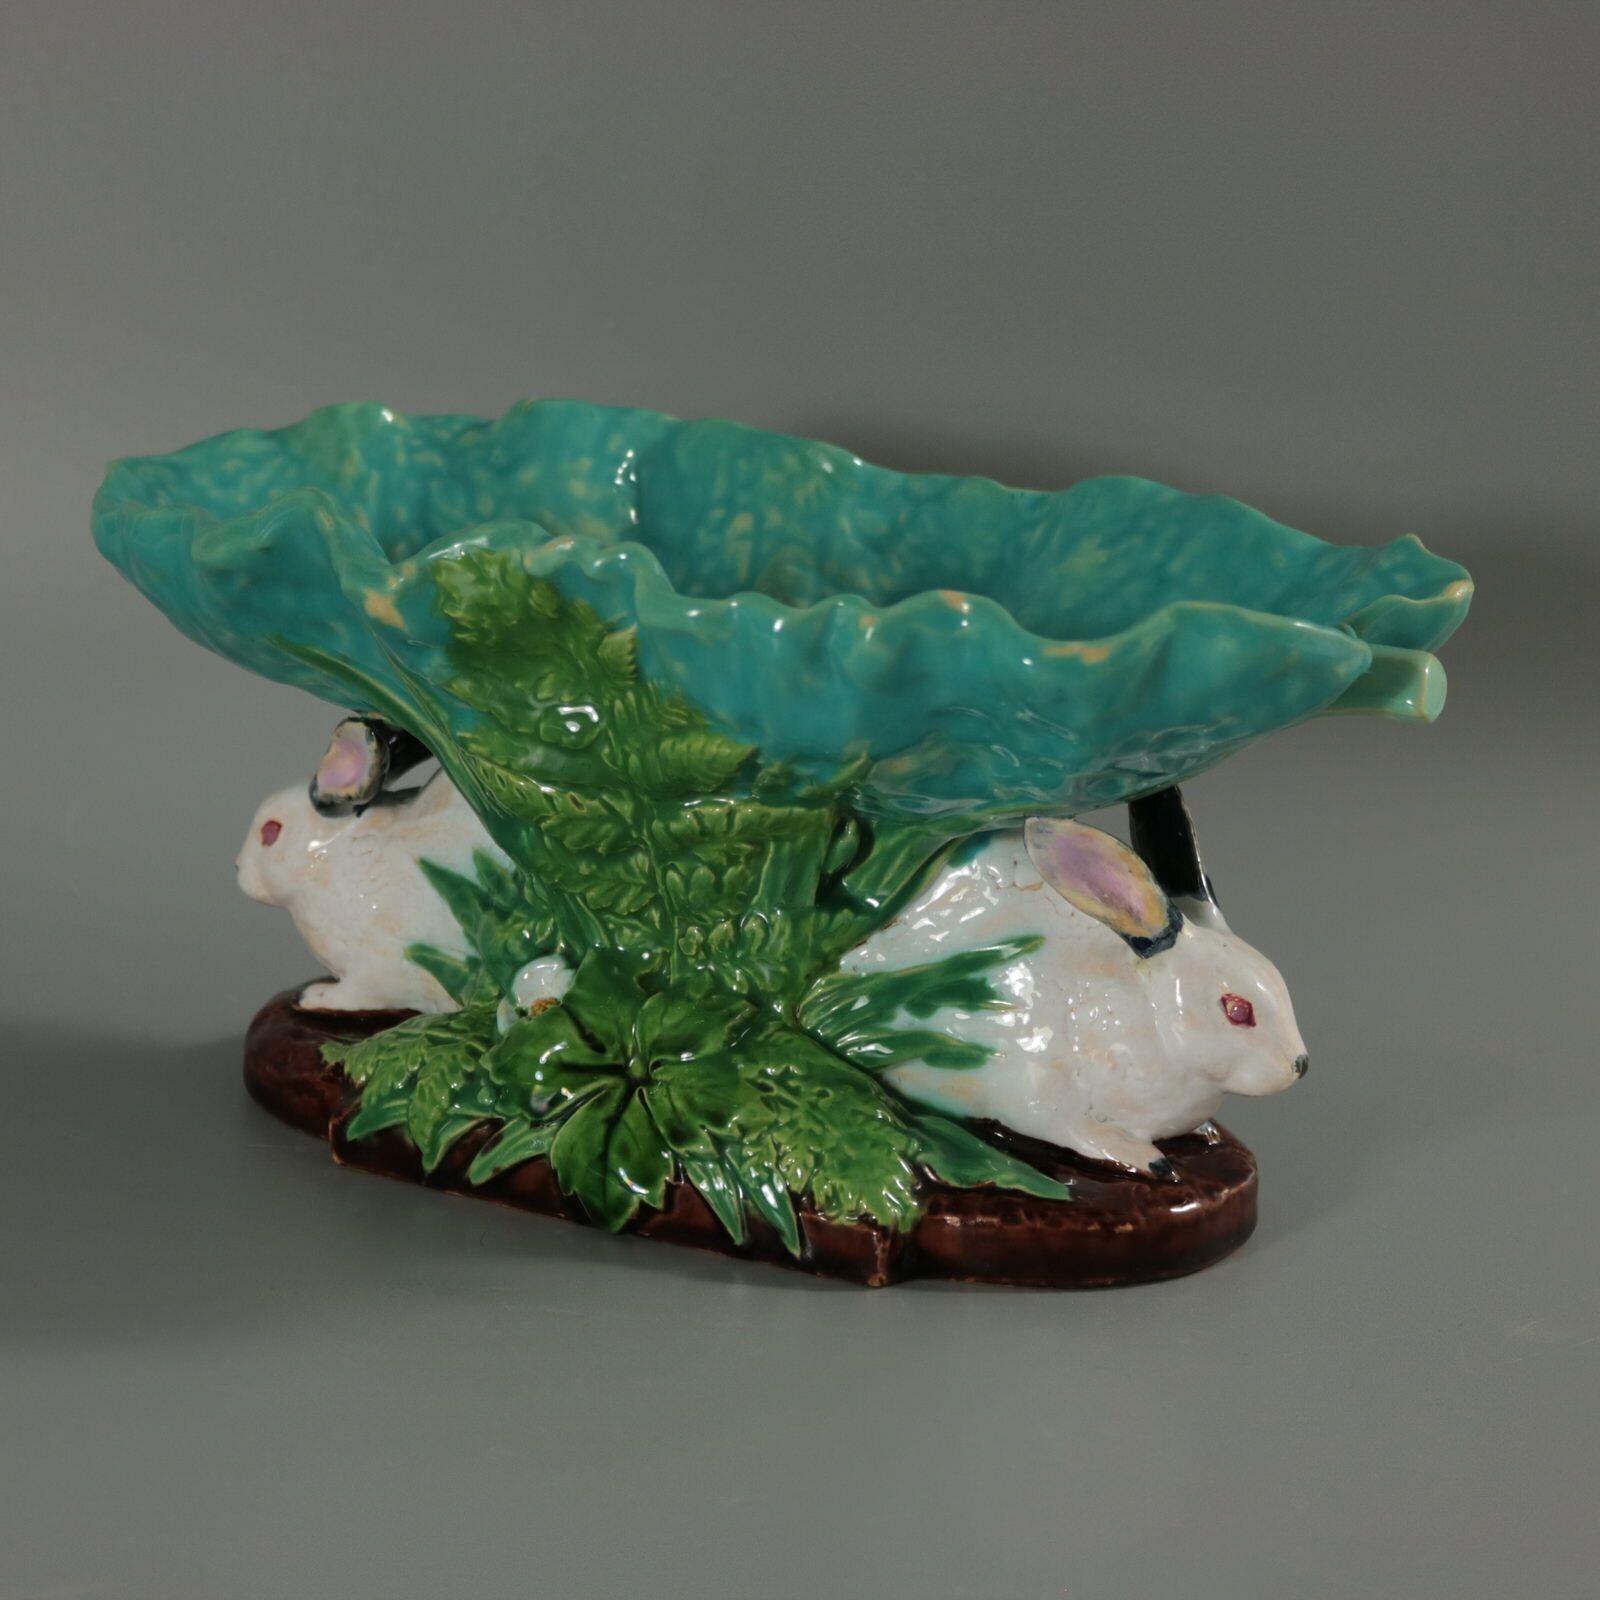 Bol figuratif en majolique de Minton représentant deux lapins au milieu de feuillages, soutenant une feuille. Coloration : turquoise, vert, blanc, sont prédominants. La pièce porte les marques du fabricant de la poterie Minton. Porte un numéro de